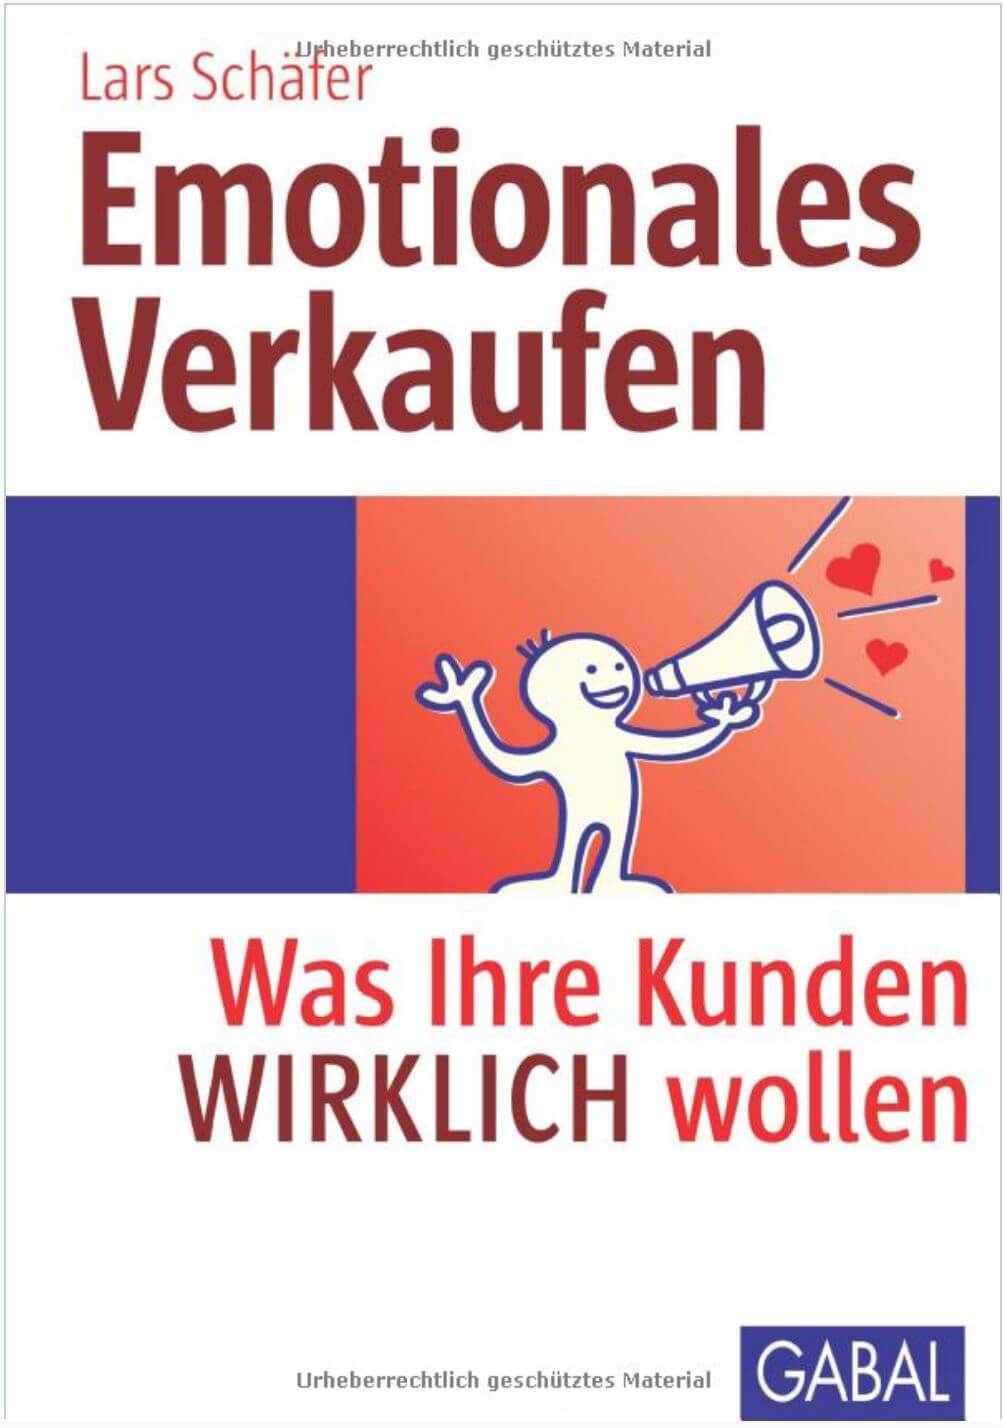 Lars Schäfer Emotionales Verkaufen